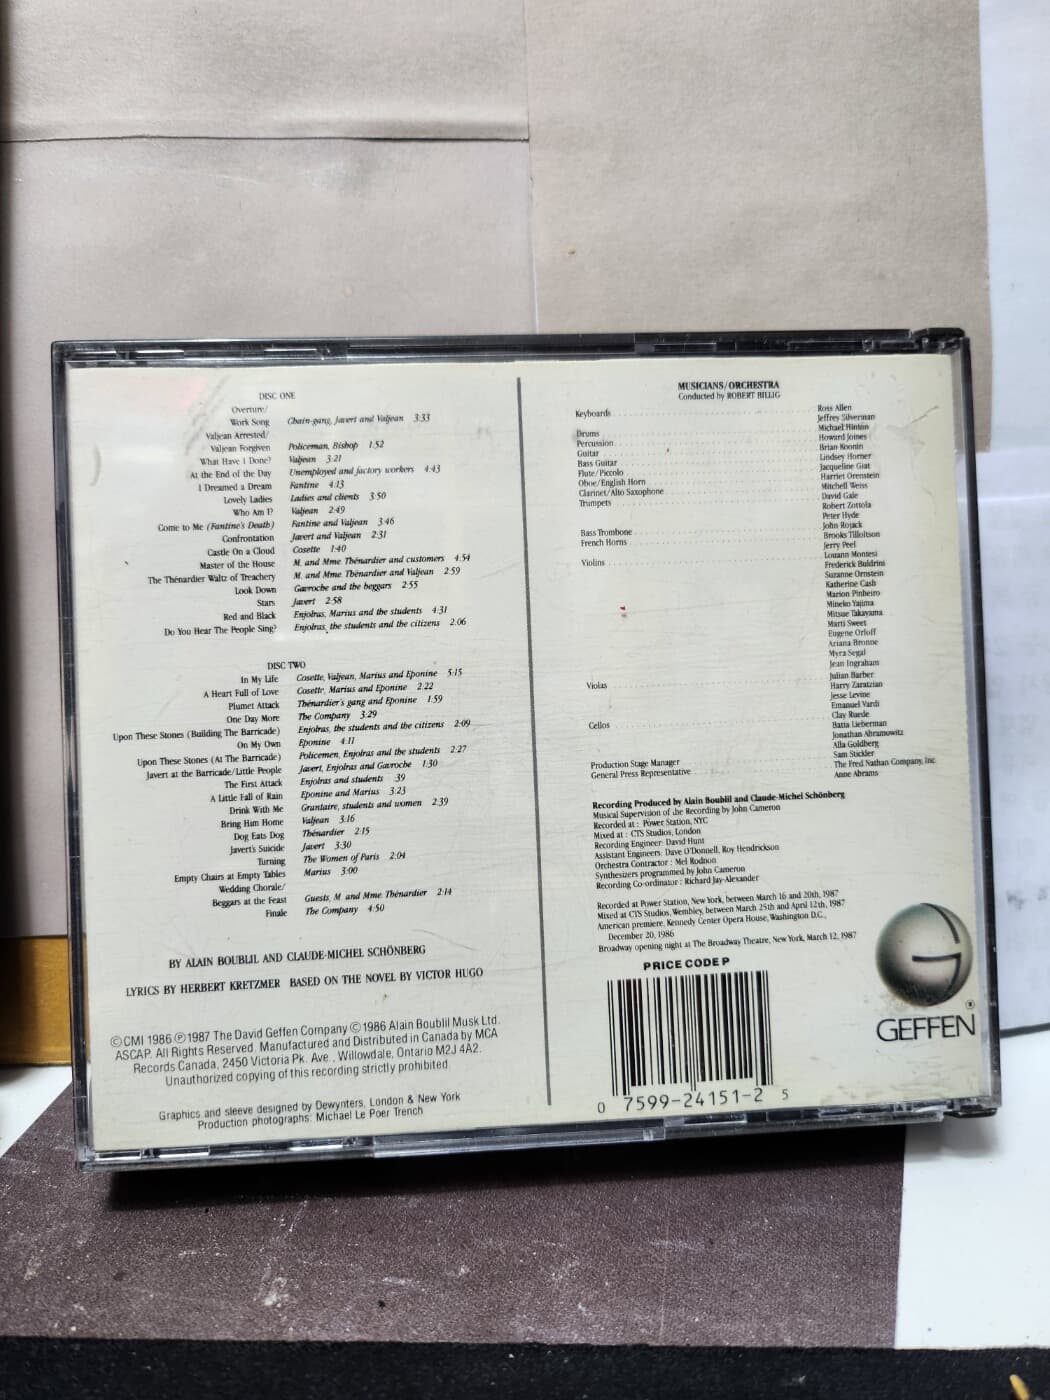 CD**Les Miserables**(ORIGINAL BROADWAY CAST RECORDING)